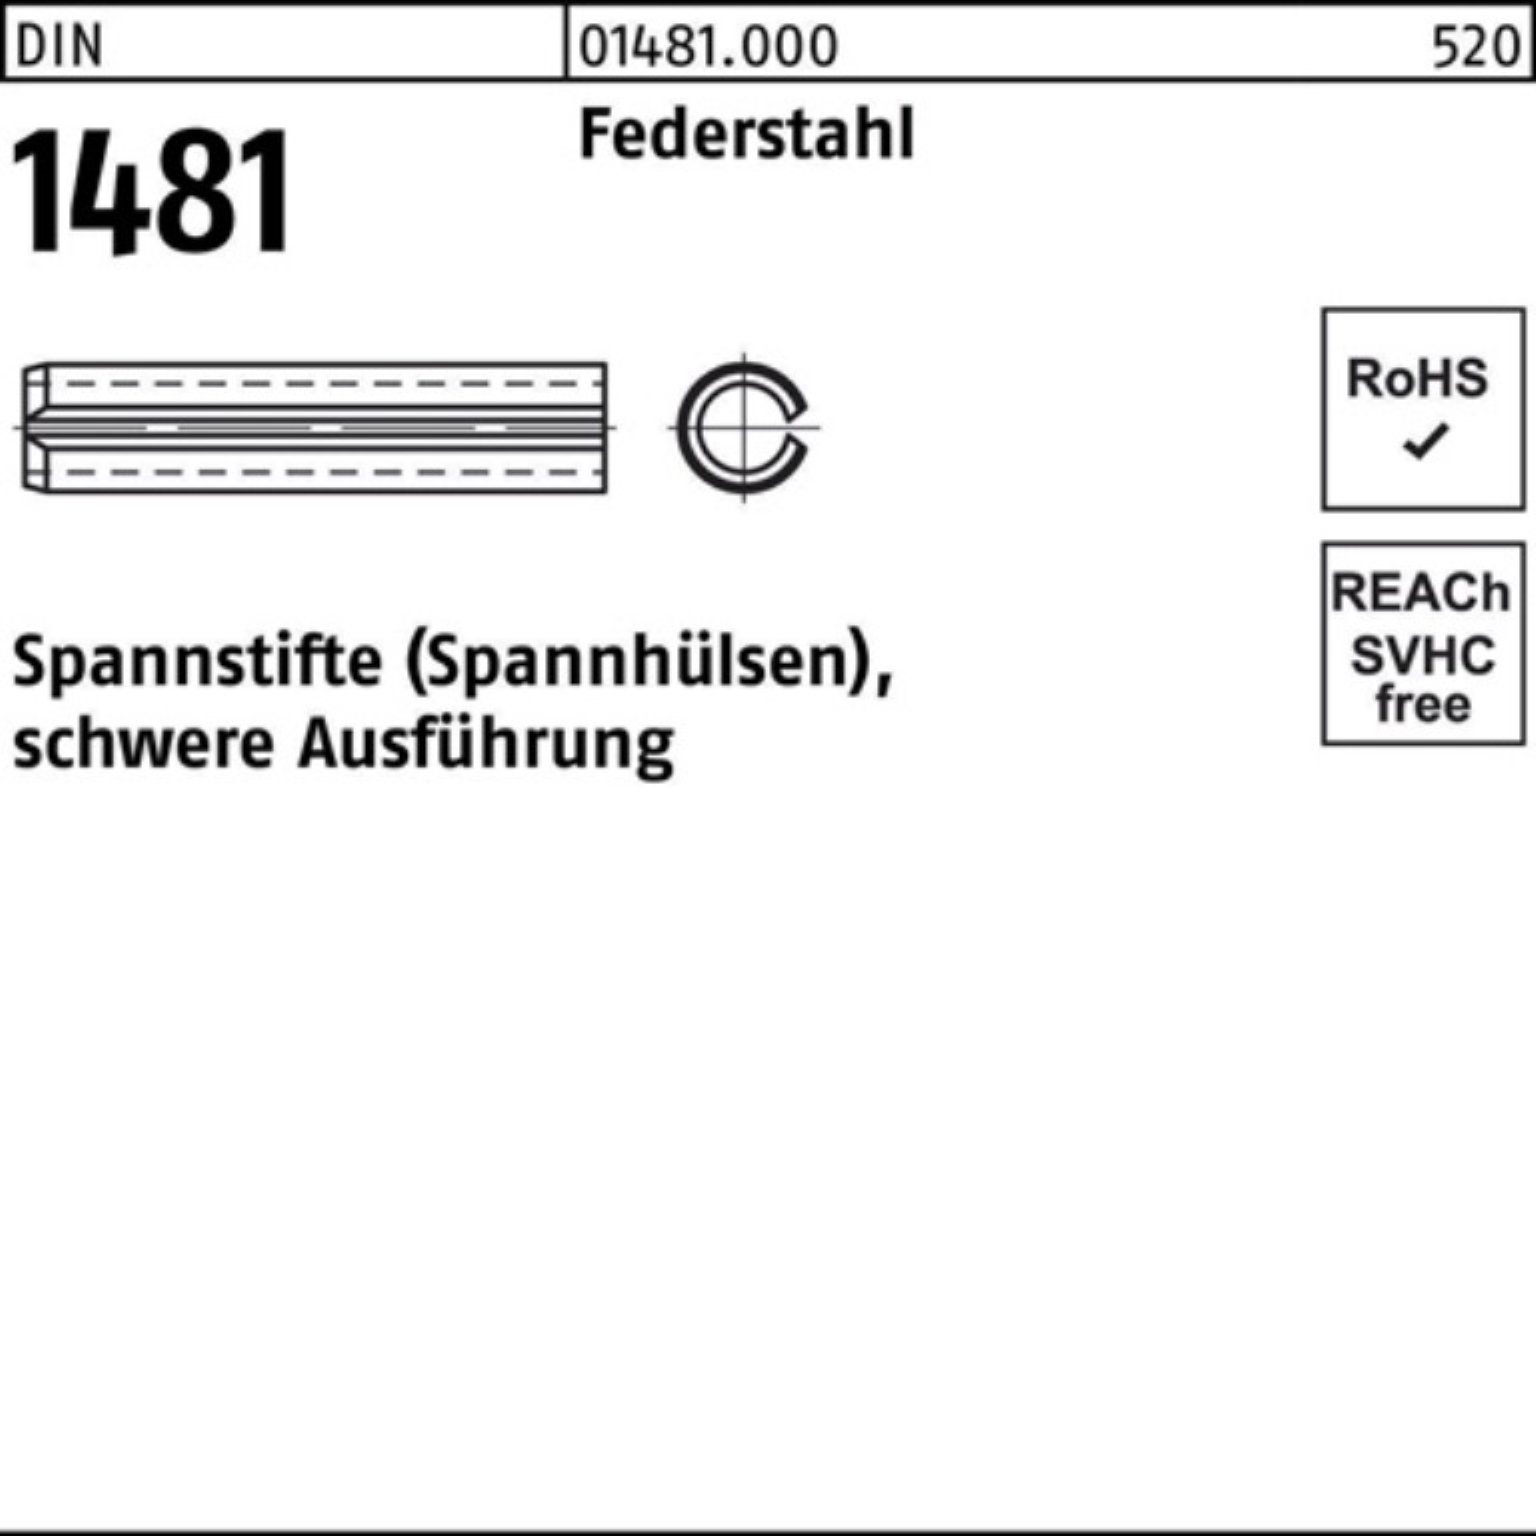 Reyher Spannstift 100er Spannstift DIN 55 28x 1481 Federstahl schwere Pack Ausführung 1